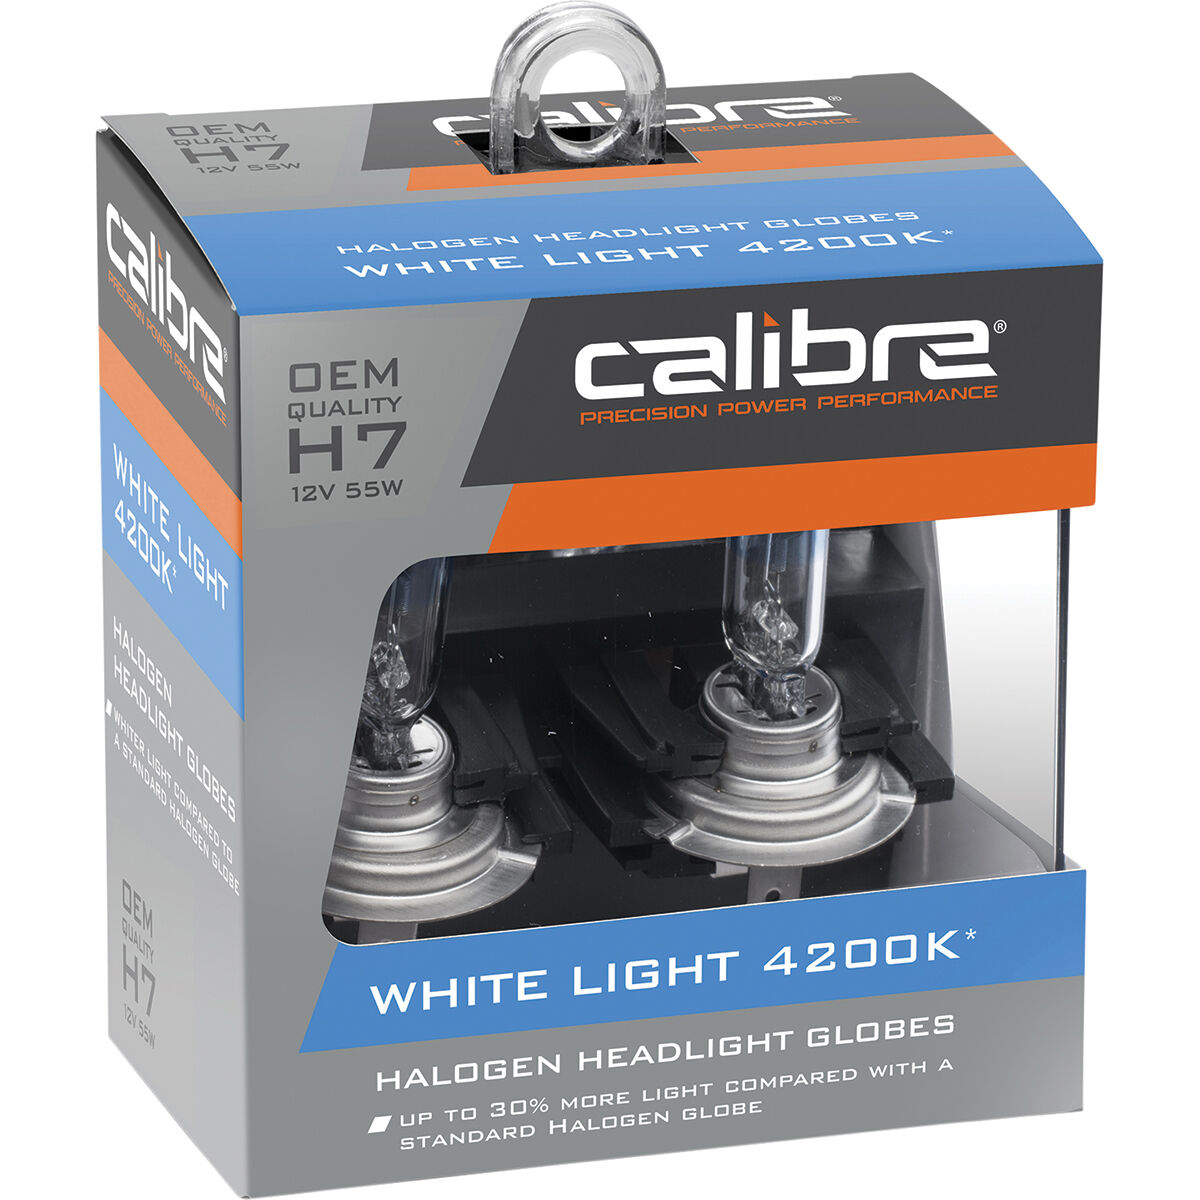 Calibre White Light 4200K Headlight Globes - H7, 12V 55W, CA4200H7